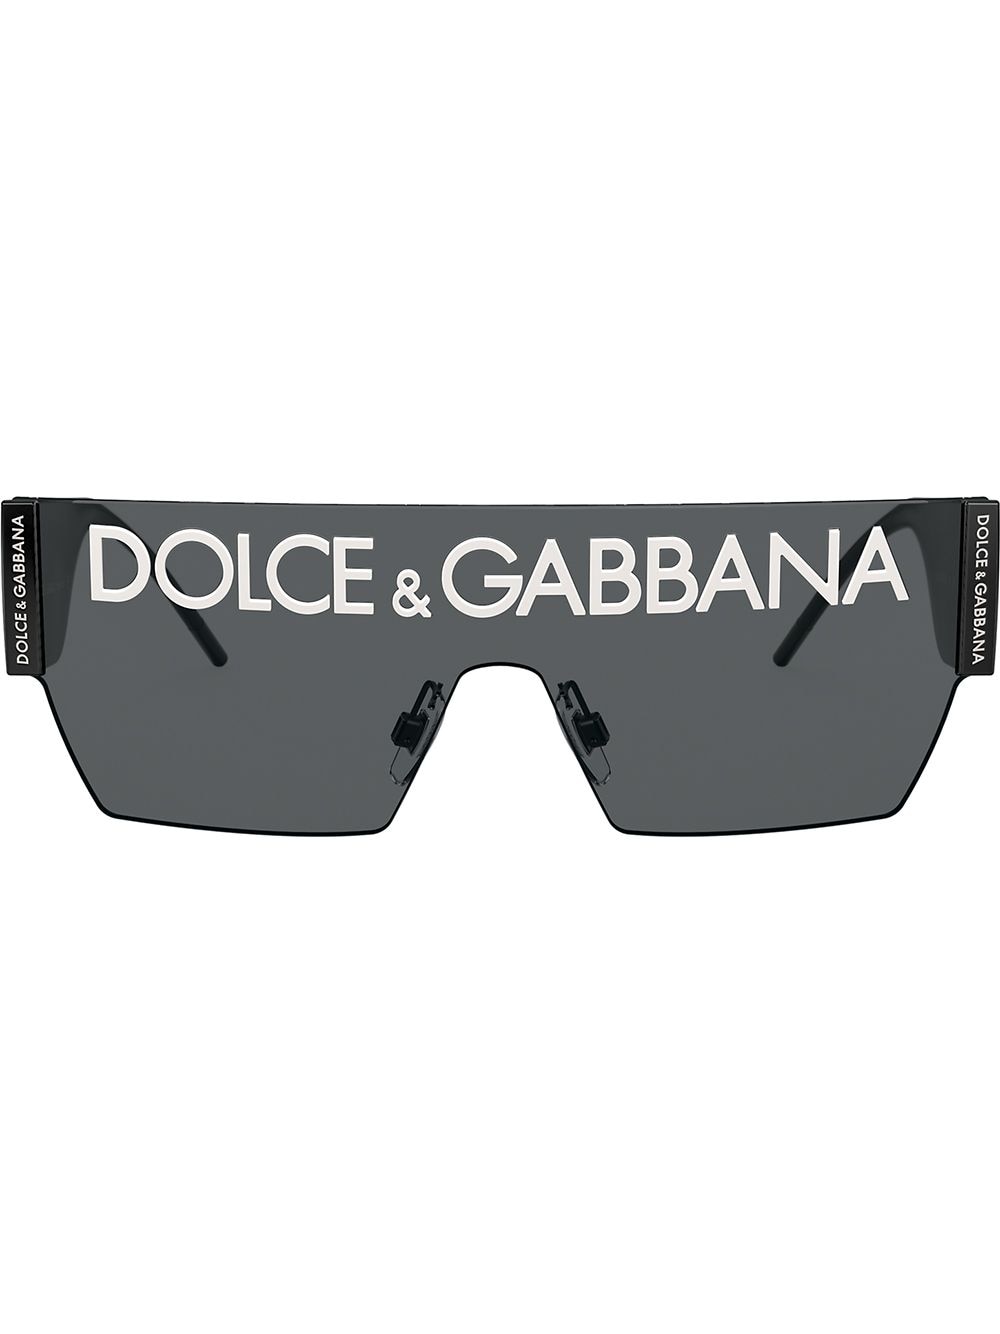 dolce & gabbana logo sunglasses